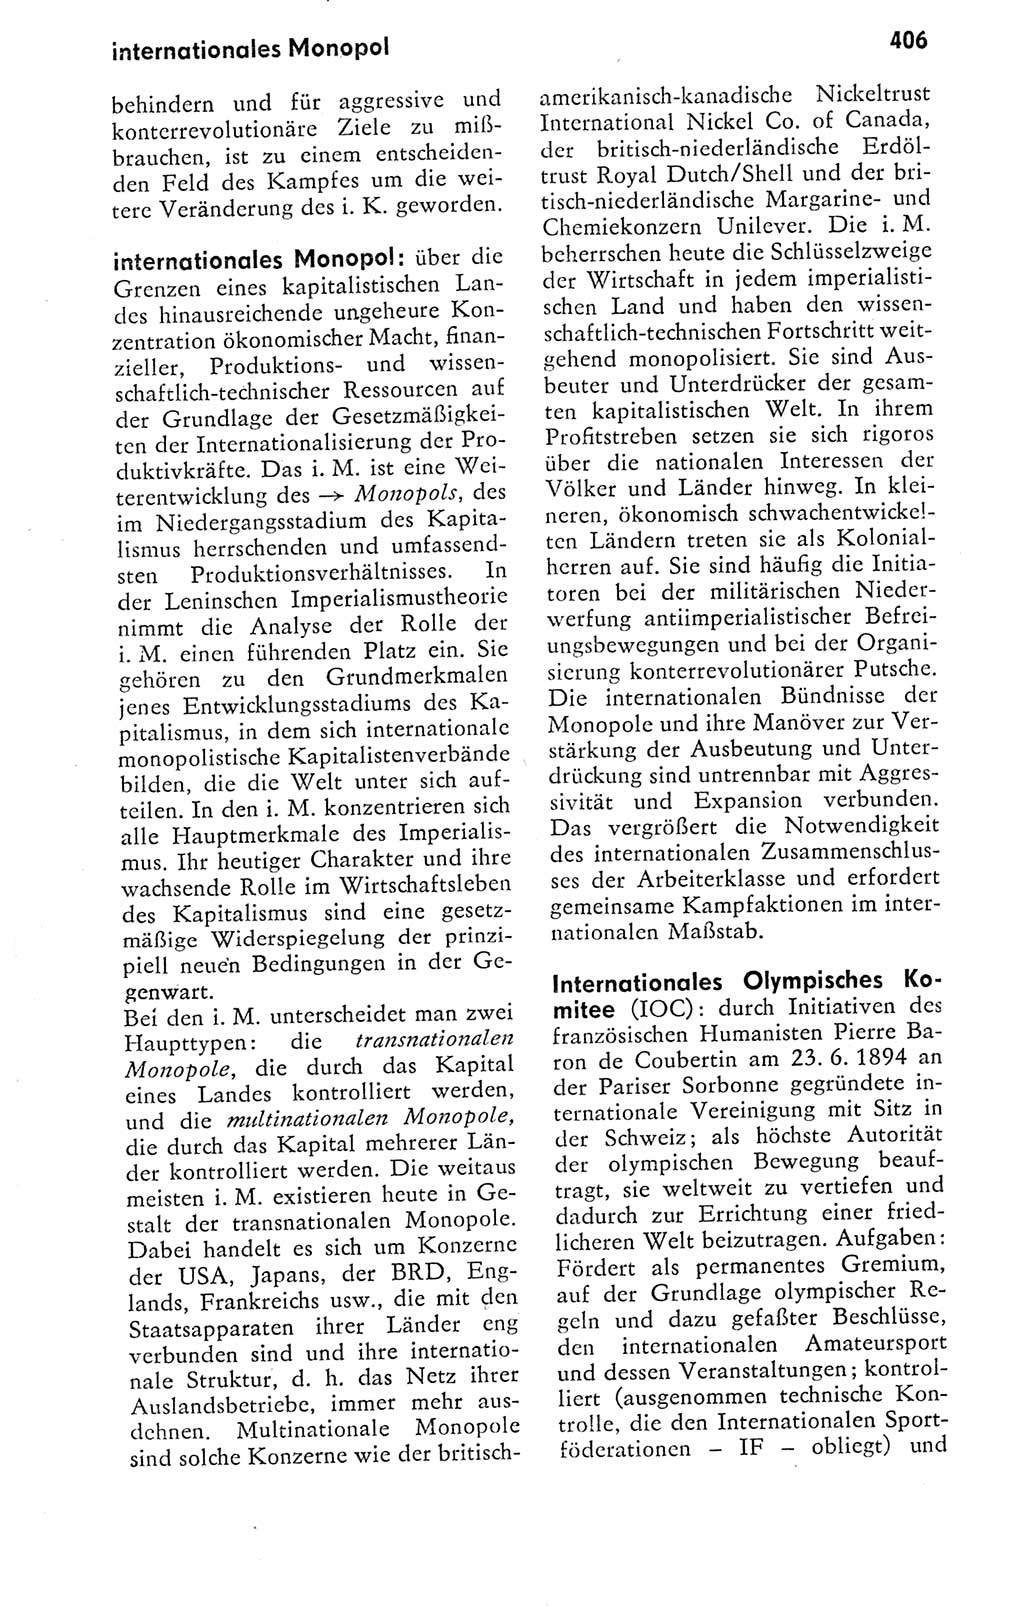 Kleines politisches Wörterbuch [Deutsche Demokratische Republik (DDR)] 1978, Seite 406 (Kl. pol. Wb. DDR 1978, S. 406)